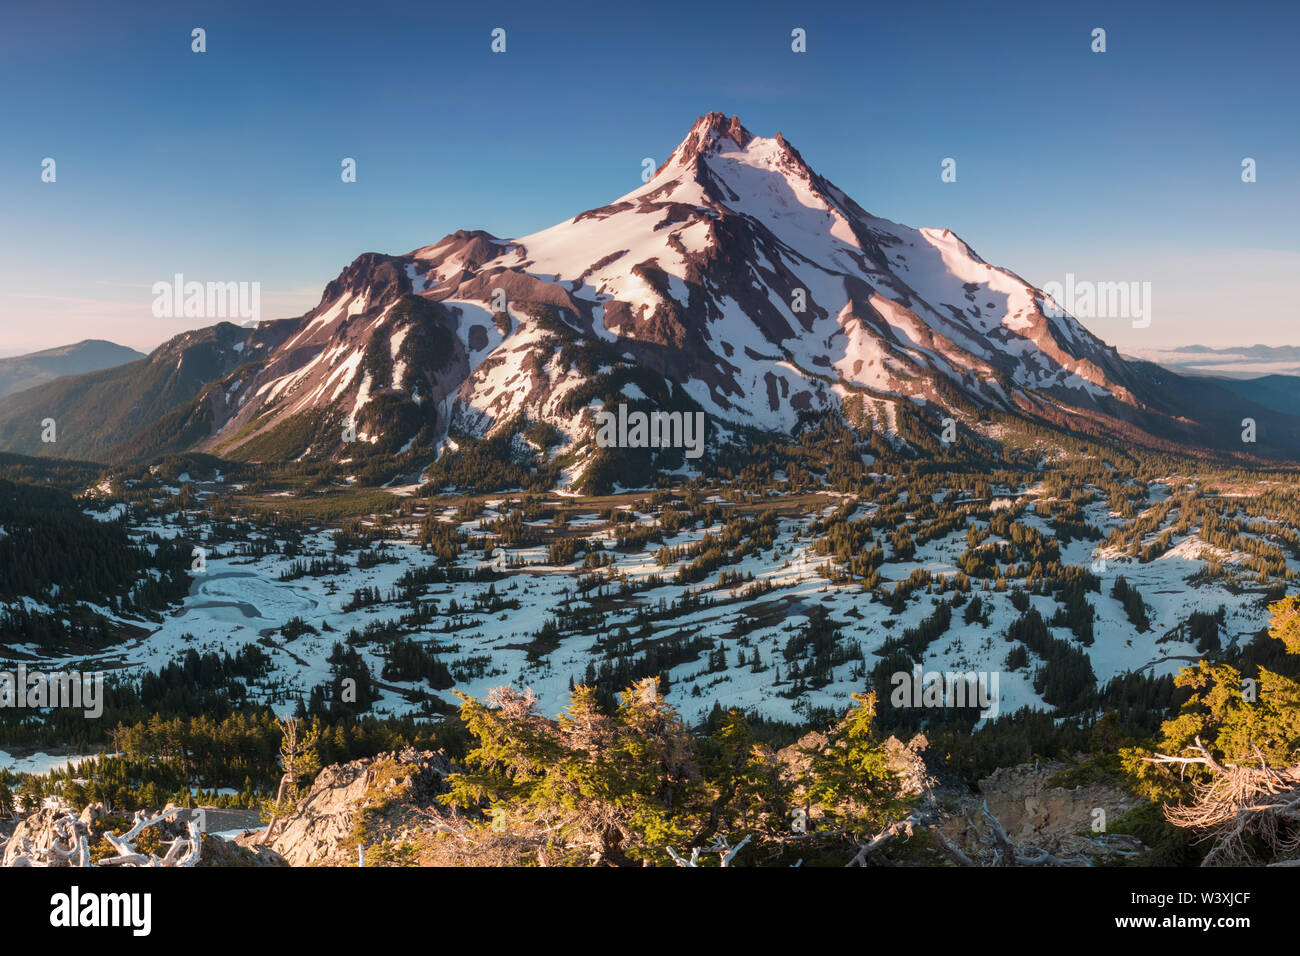 Mit einer Höhe von 10,492 Metern ist Mt Jefferson der zweithöchste Berg von Oregon.Mount Jefferson Wilderness Area, Oregon die schneebedeckte zentrale Oregon Cascade Stockfoto